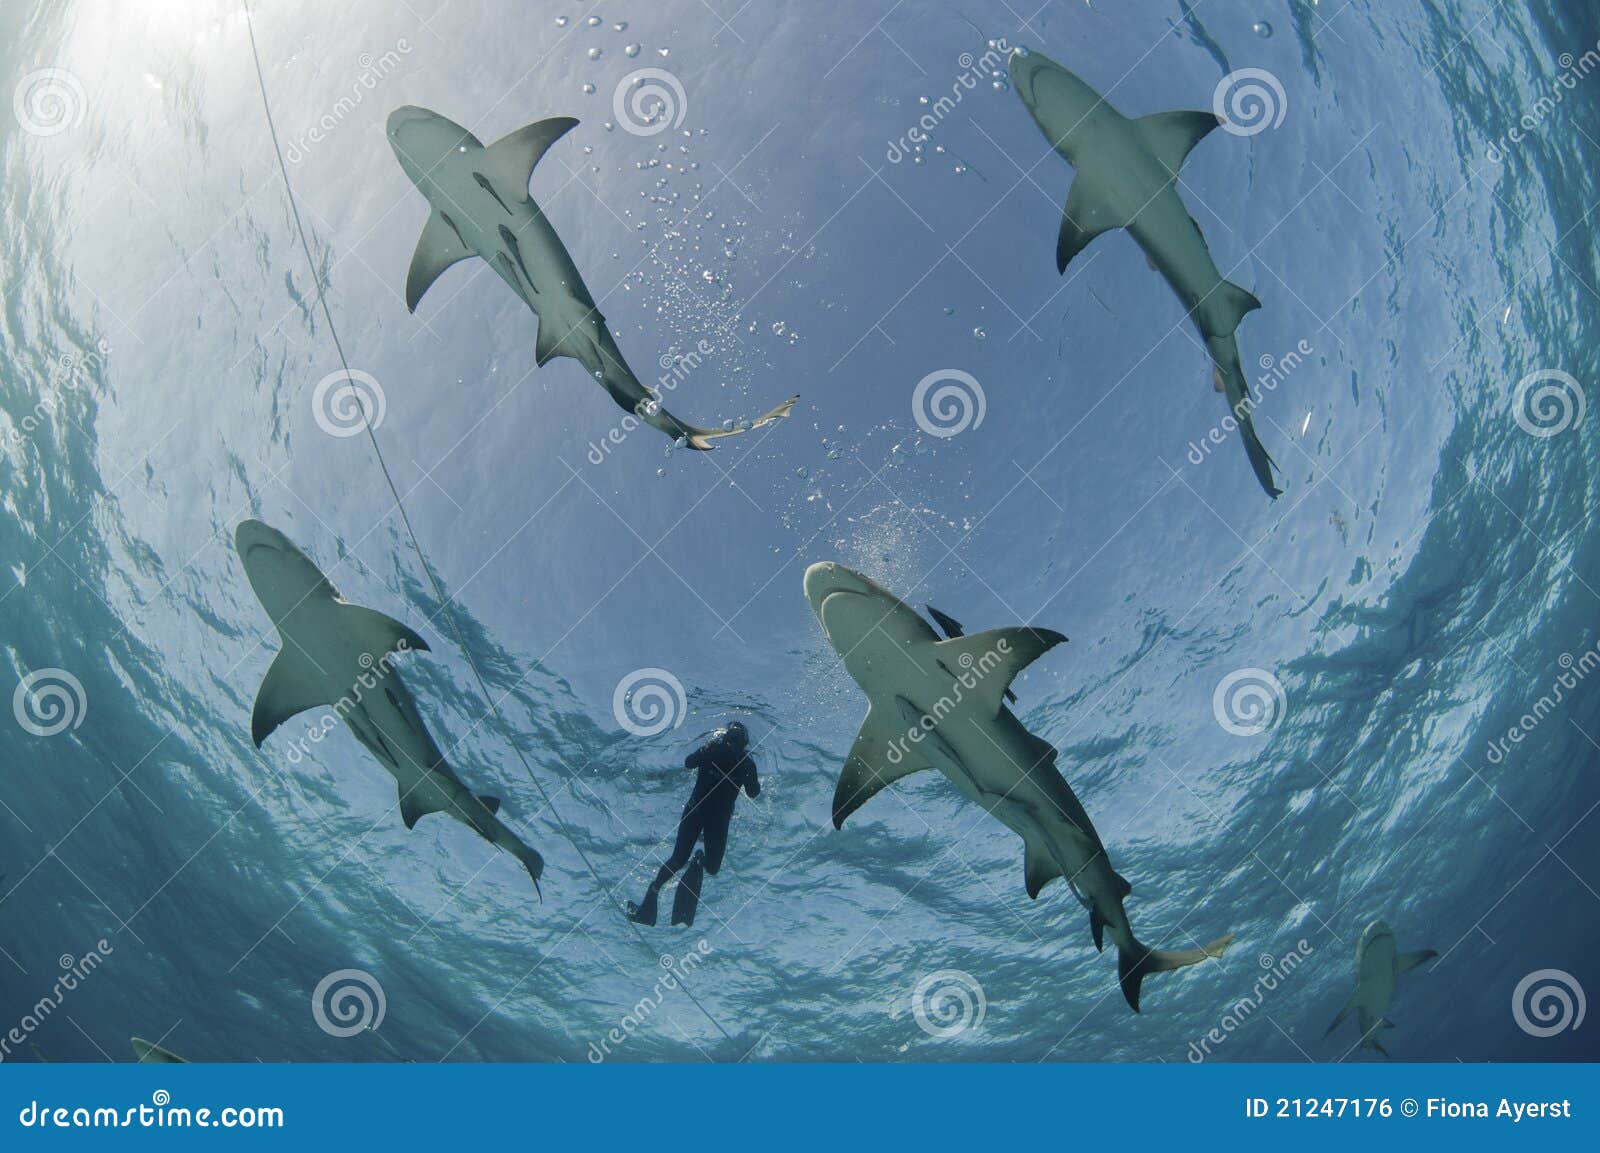 flight of the lemon sharks